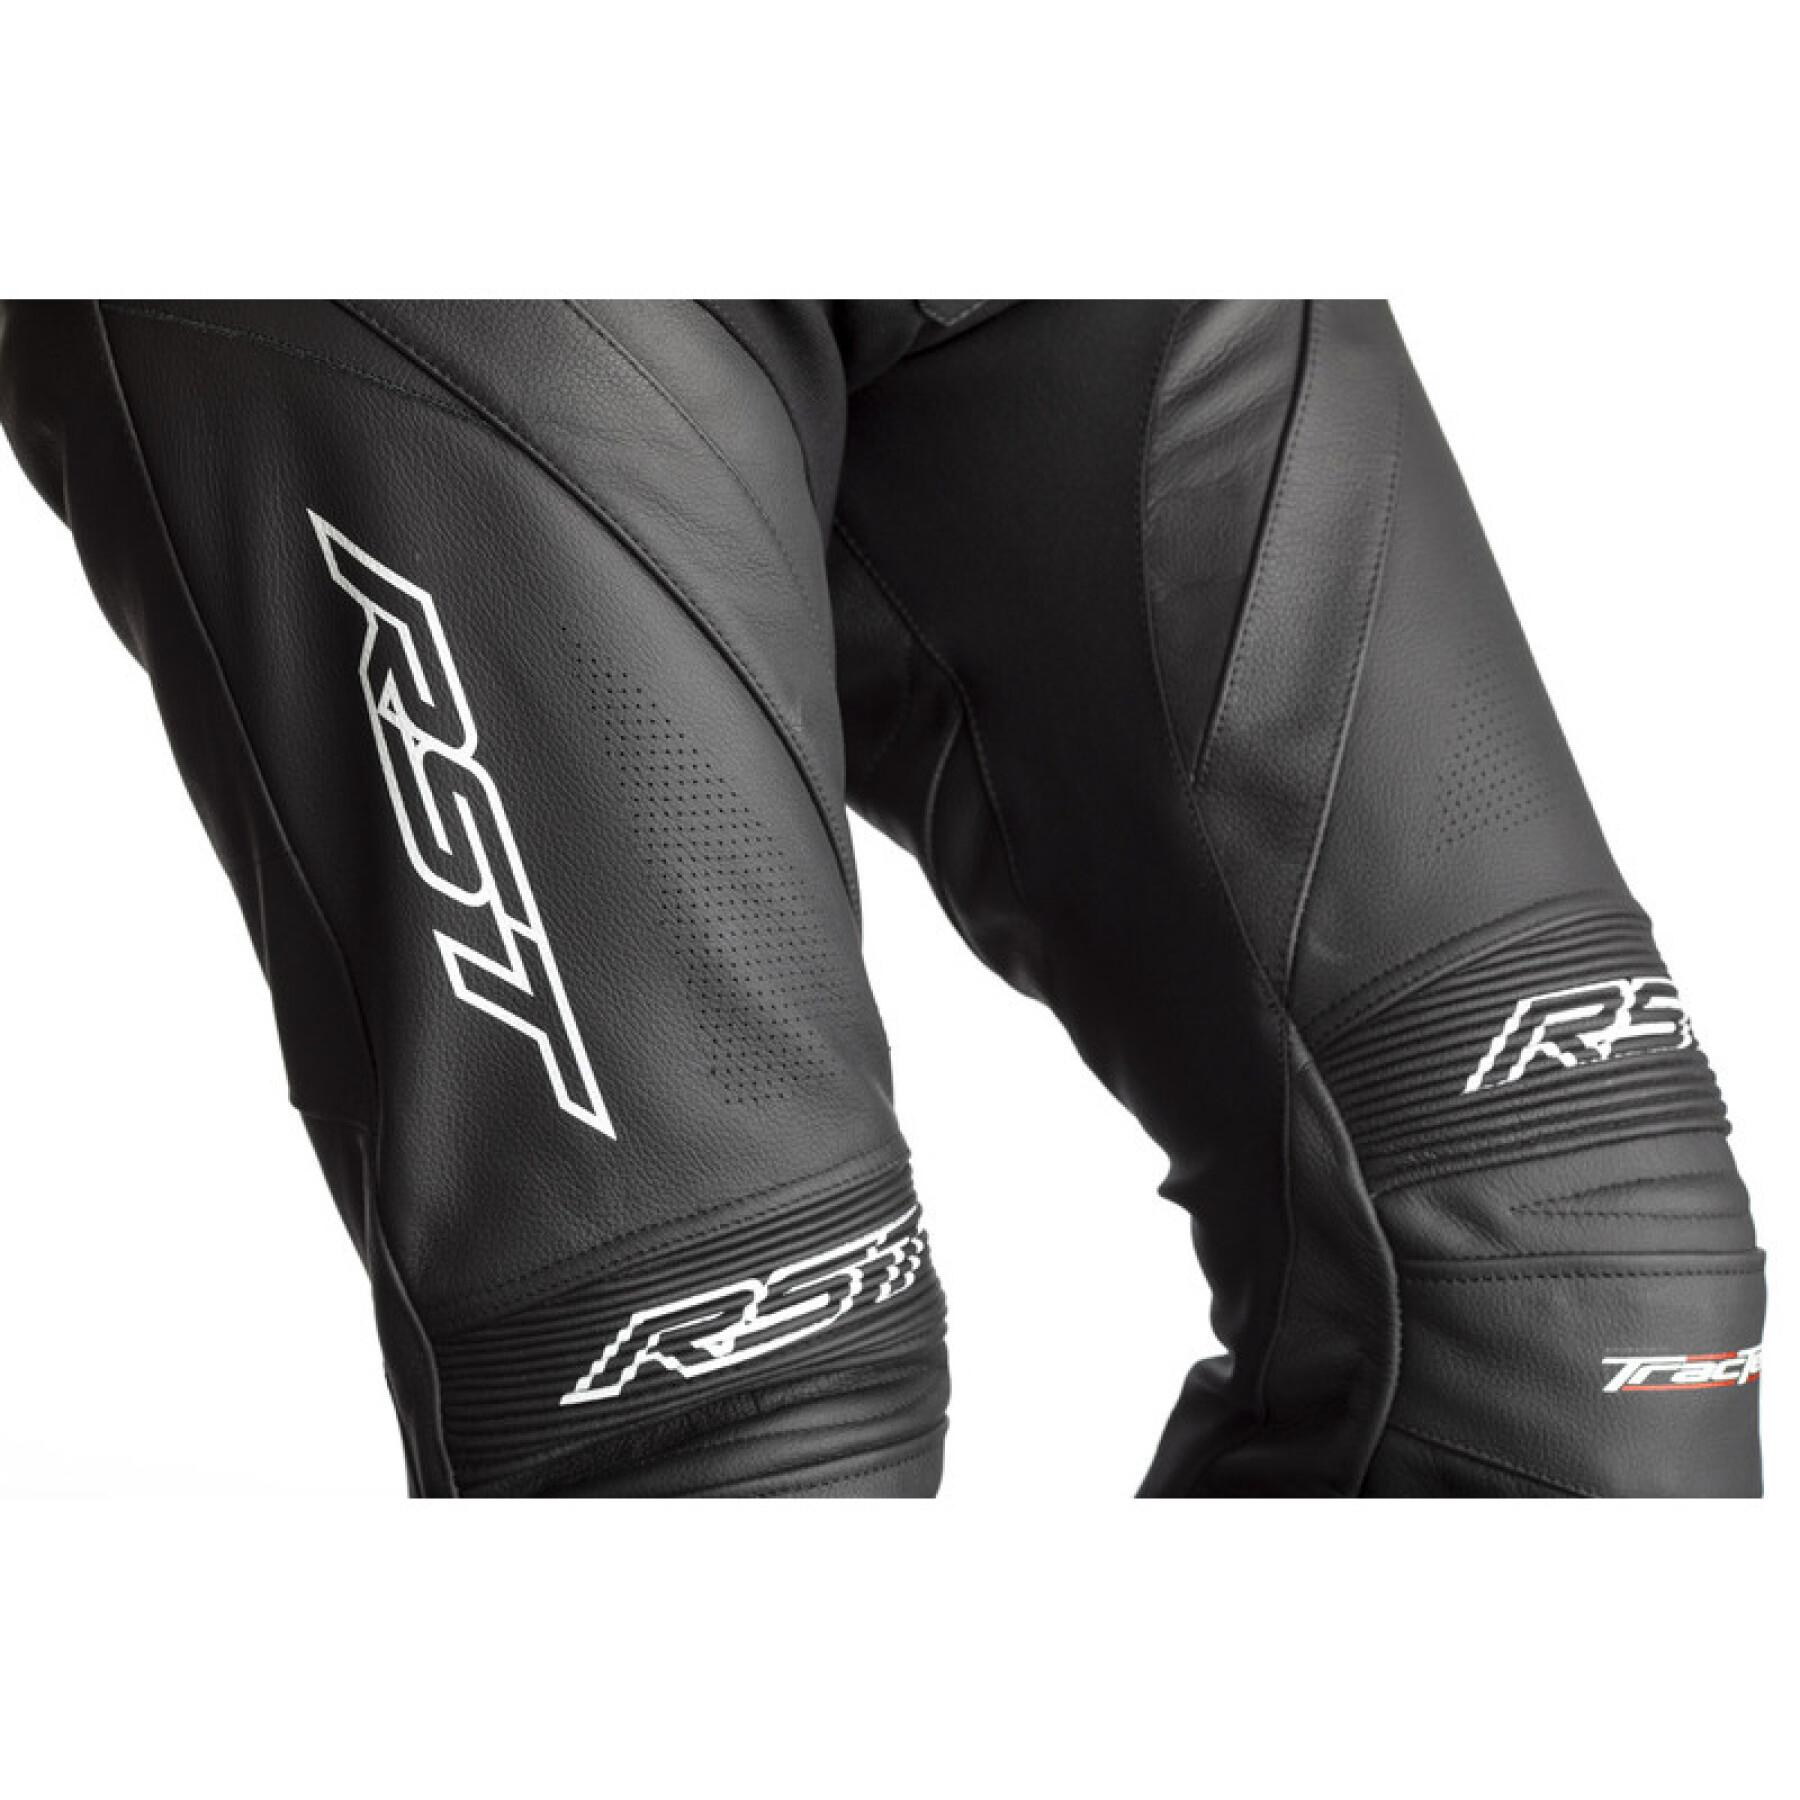 Skórzane spodnie motocyklowe RST Tractech EVO 4 CE